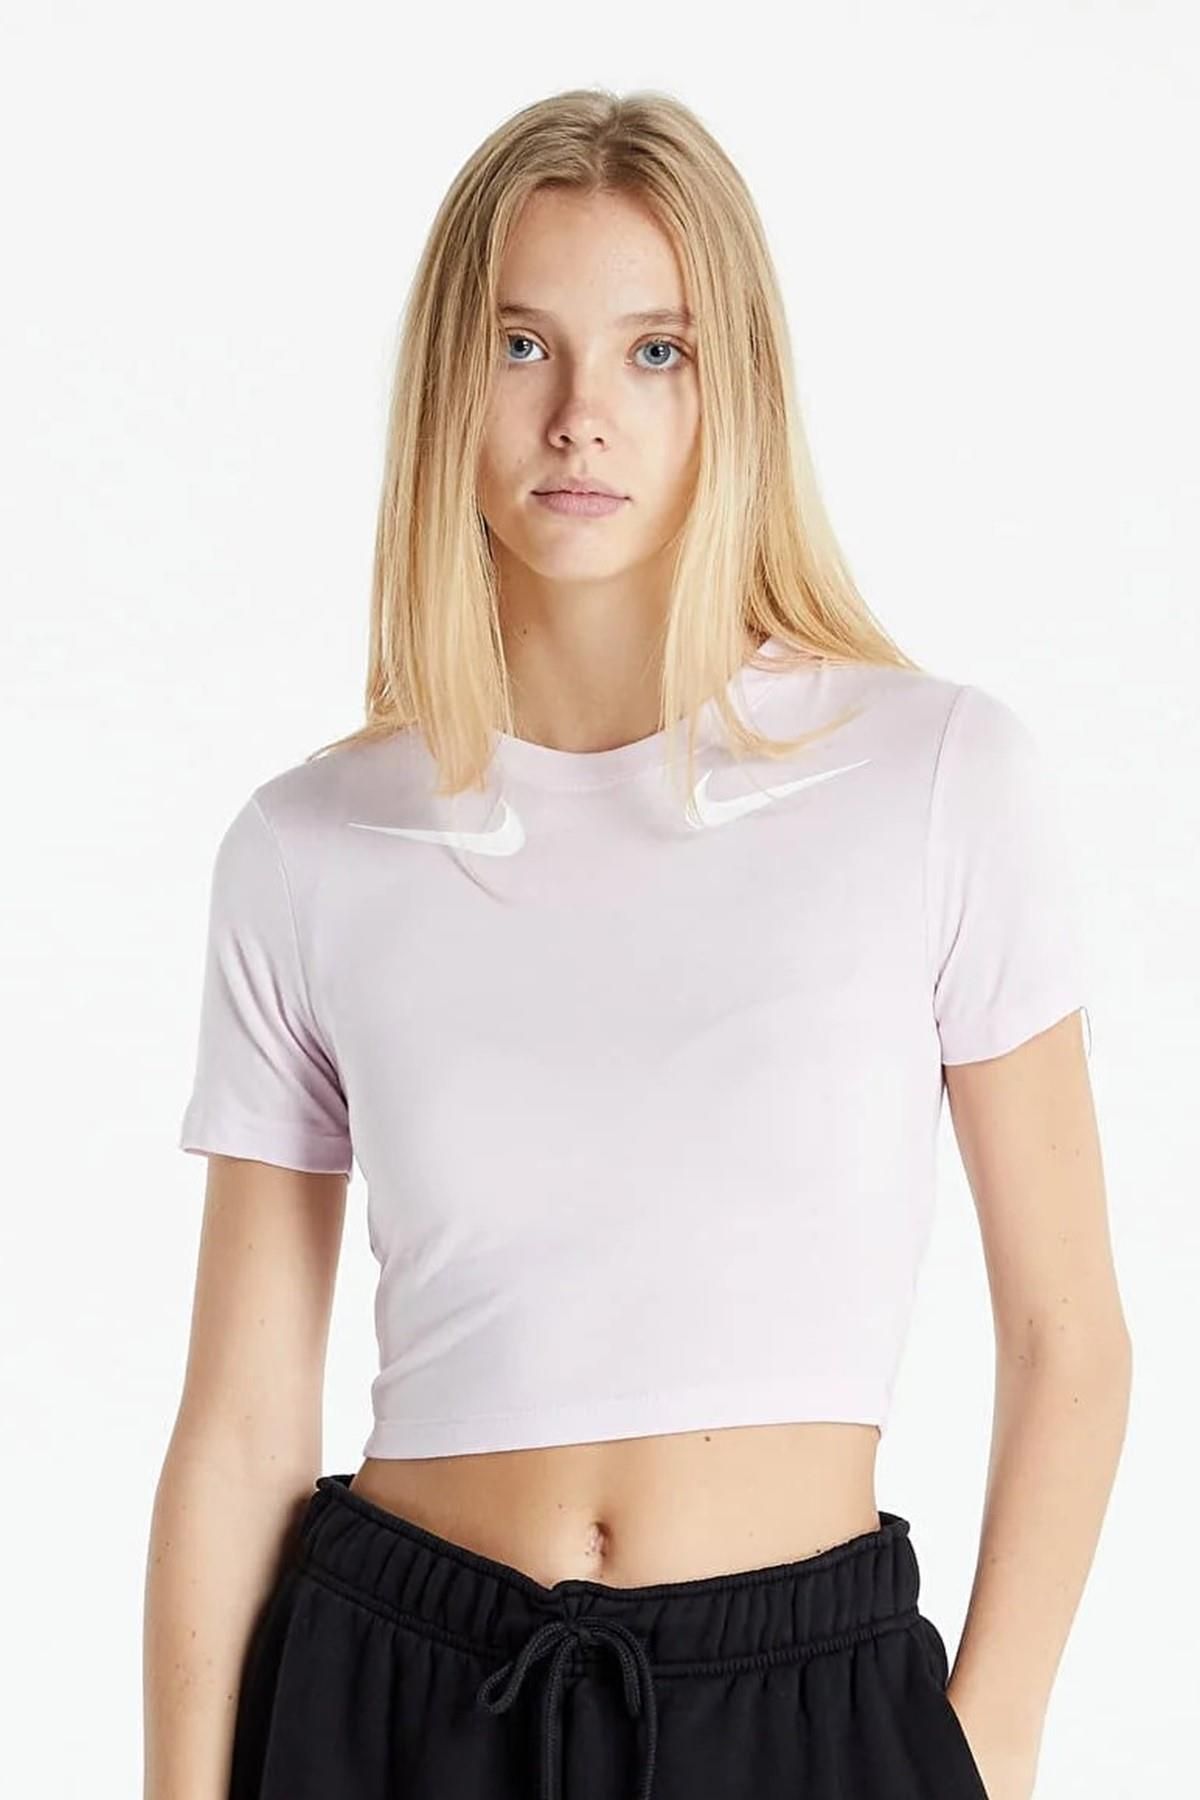 Nike Double Swoosh Crop Fit Tee Pink Likralı ince Crop Kısa Tişört Pembe